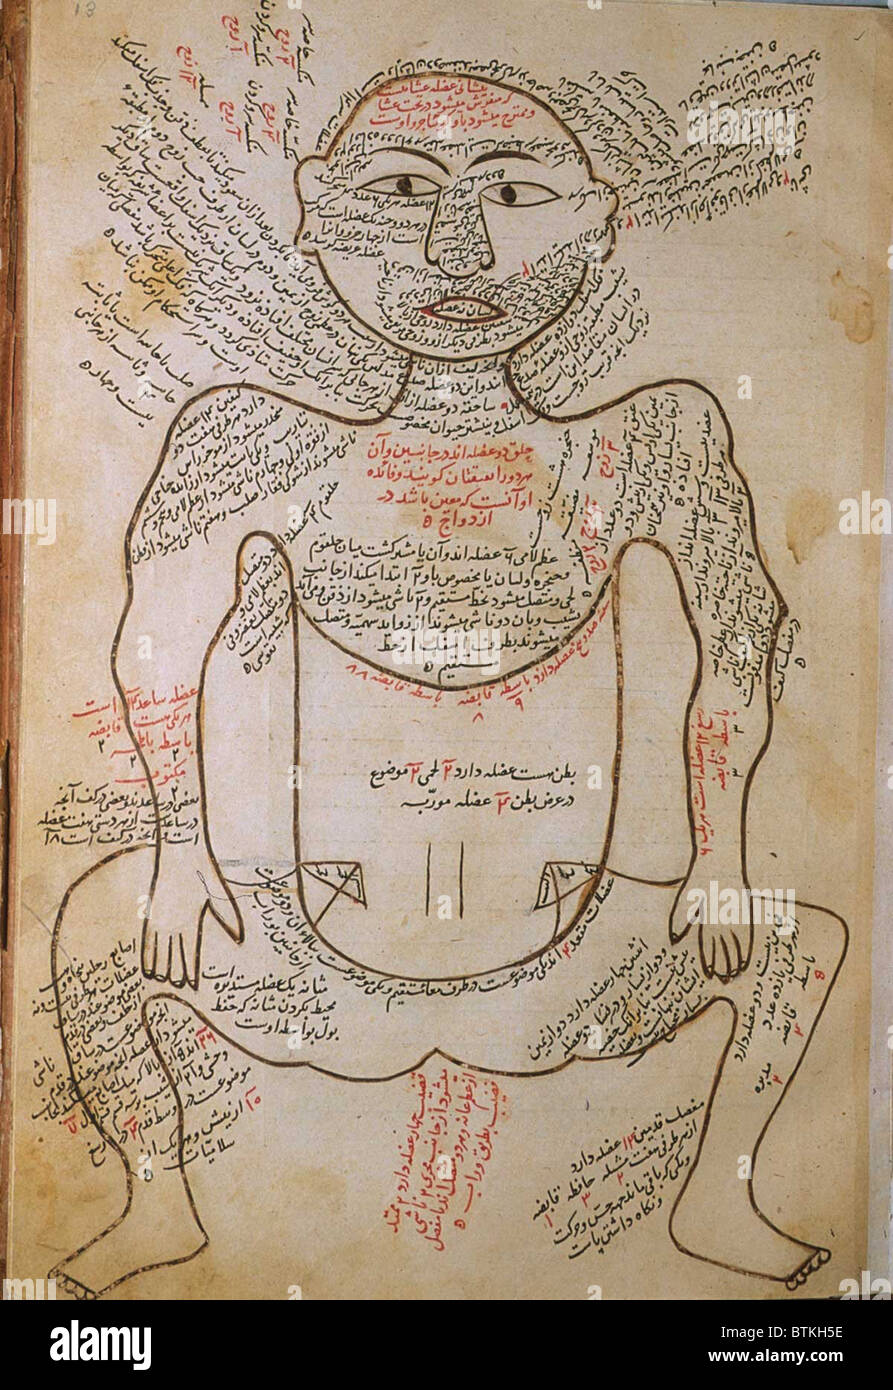 La muscolatura umana, da MANSUR'S ANATOMY, creato dal persiano di studioso e di medico, Mansur ibn Ilyas (ca. 1370-1423). La figura è mostrata frontalmente, con estese arabo le didascalie che descrivono i muscoli. Ca. Xv o inizio del XVI secolo. Foto Stock